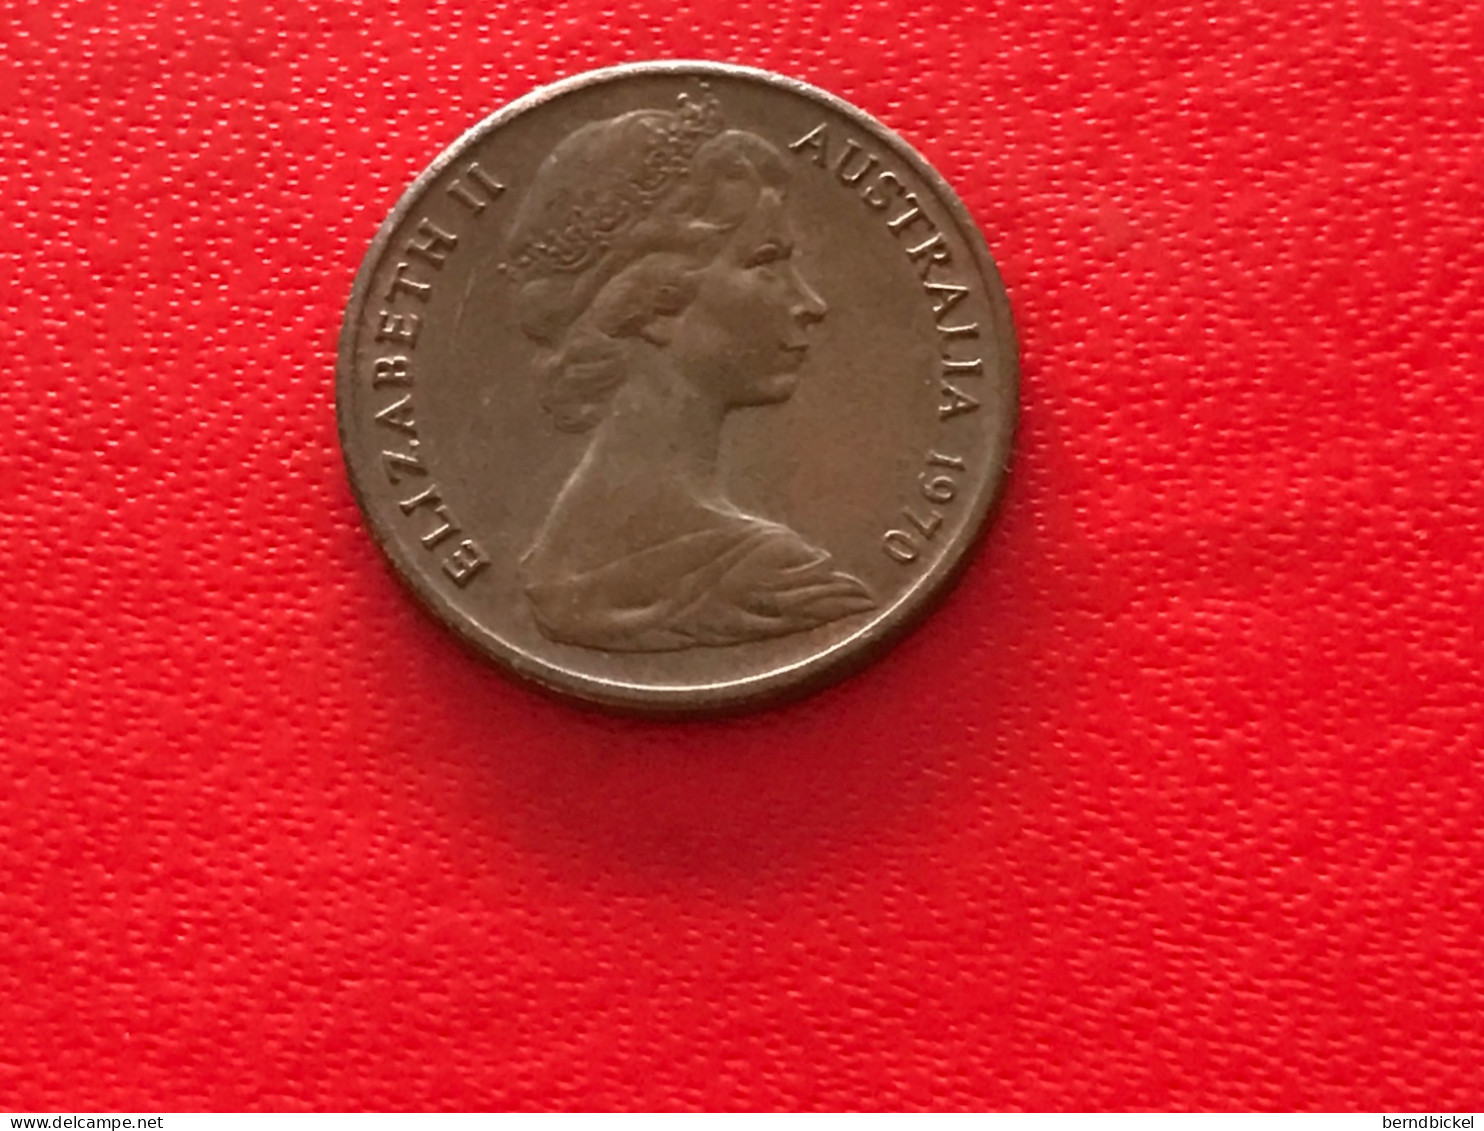 Münze Münzen Umlaufmünze Australien 1 Cent 1970 - Cent